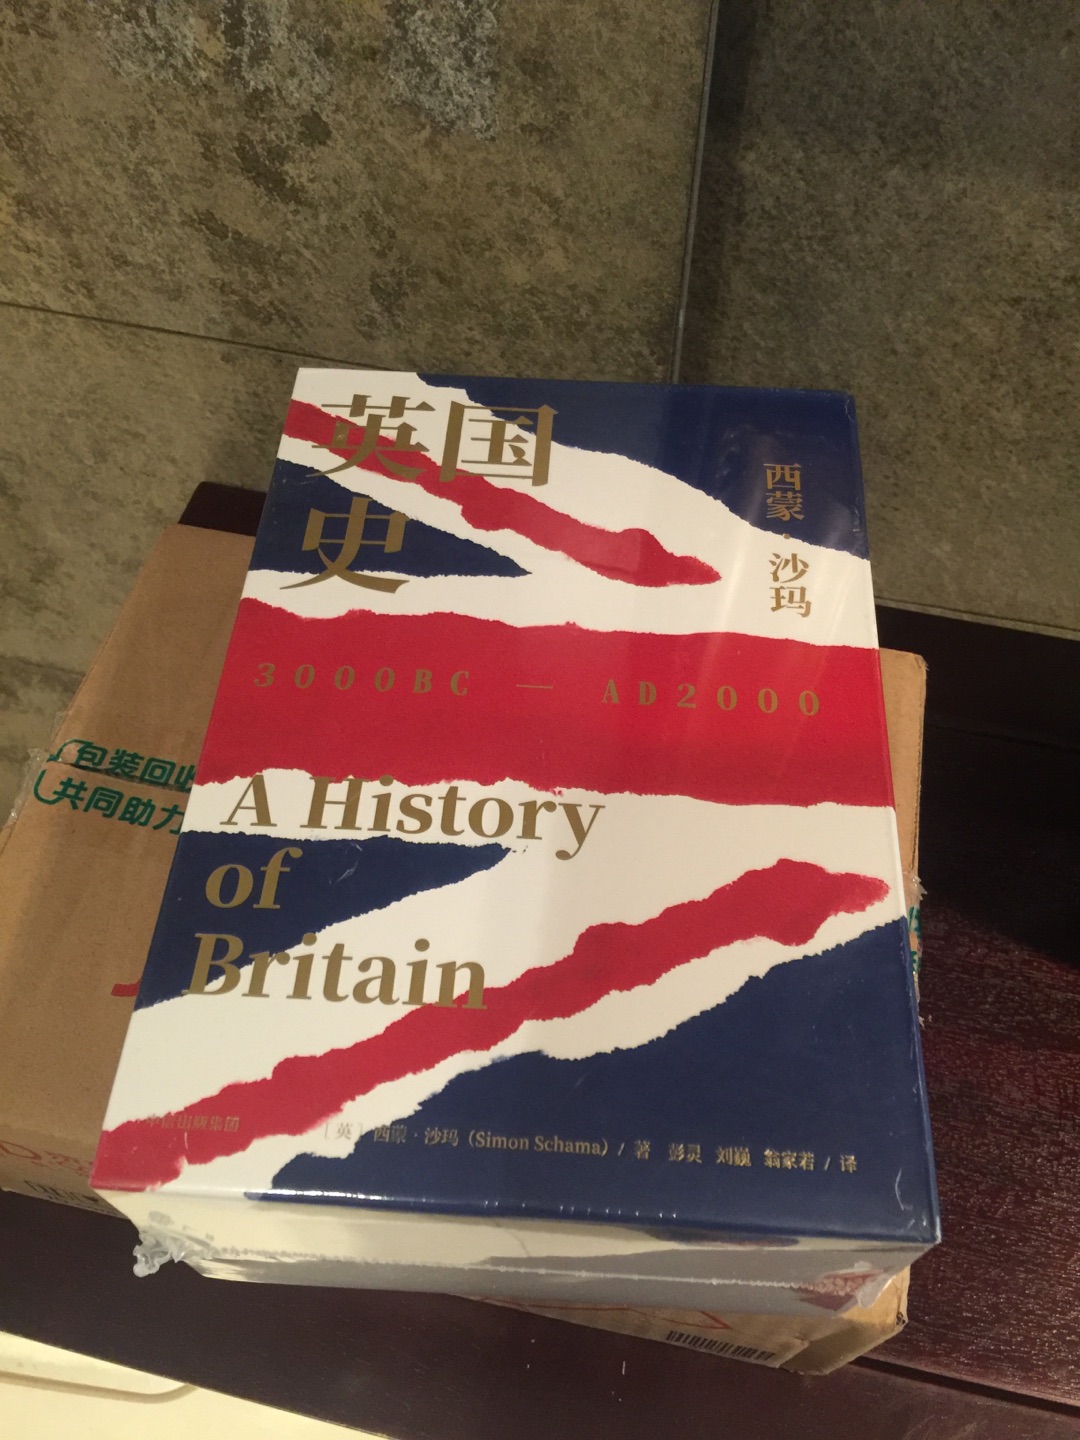 相当不错的一本英国史方面的书，此前看了BBC据此拍的15集同名纪录片，书籍比纪录片的信息更丰富、更翔实。非常值得一读！书的印刷装订质量也不错！